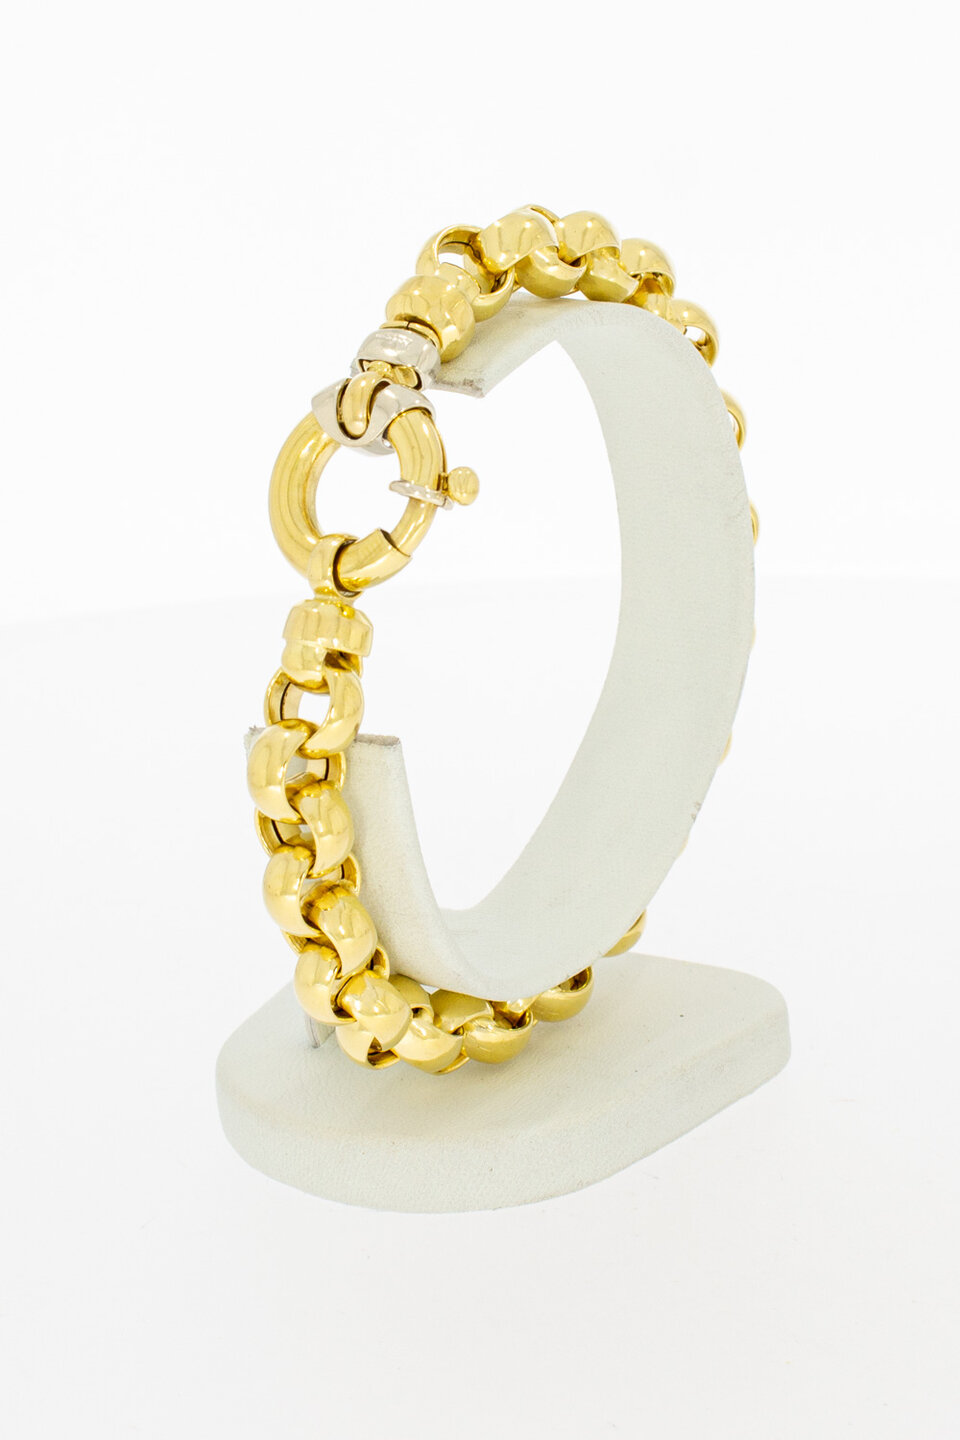 Erbs Gold Armband 18 Karat - 21,5 cm